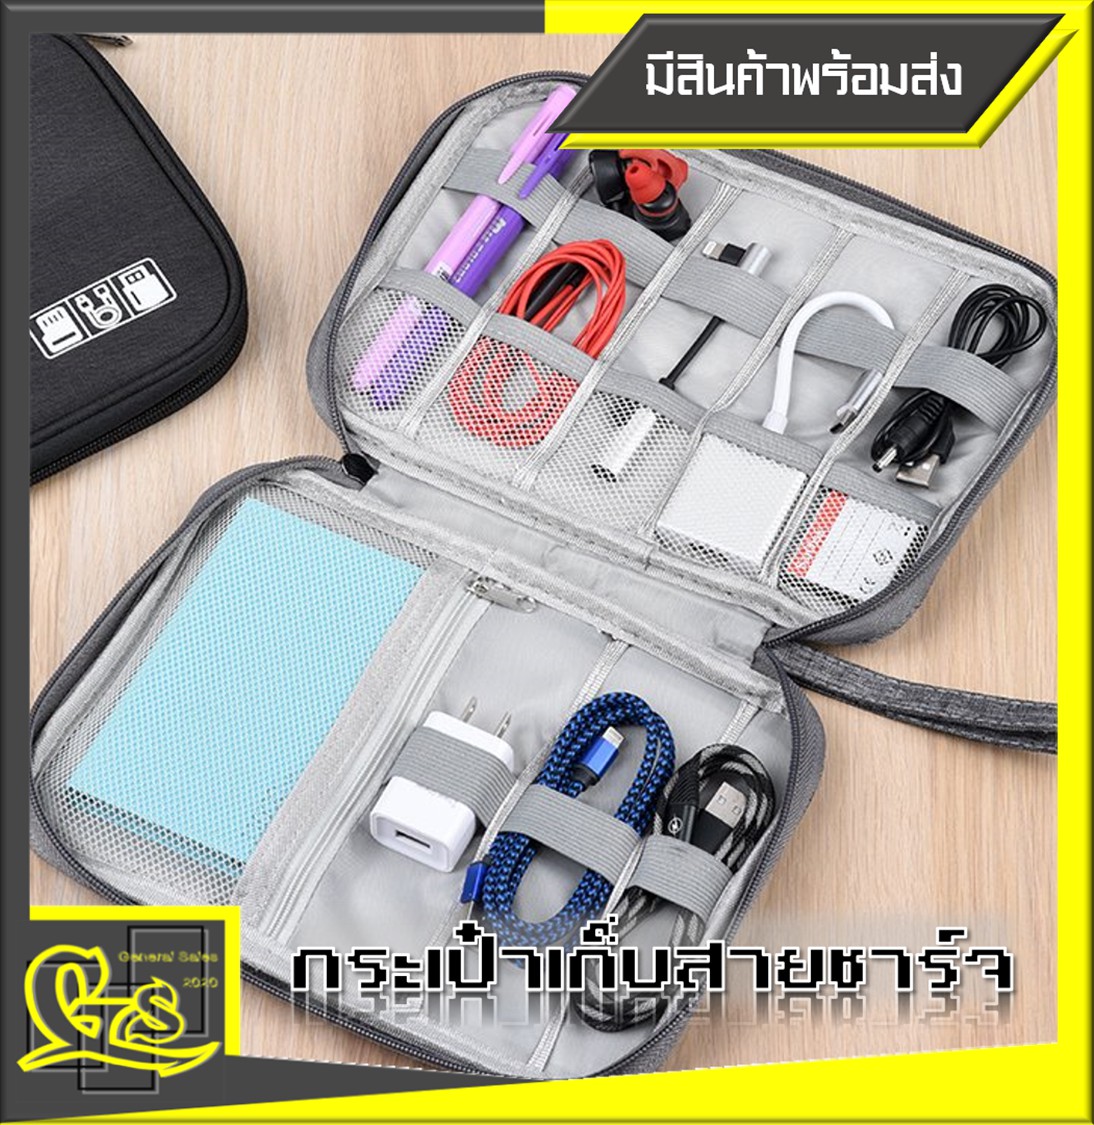 กระเป๋าพกพาสำหรับเก็บสายชาร์จ, หูฟัง, USB และของใช้ส่วนตัว กระเป๋าเก็บหูฟัง สายชาร์จ